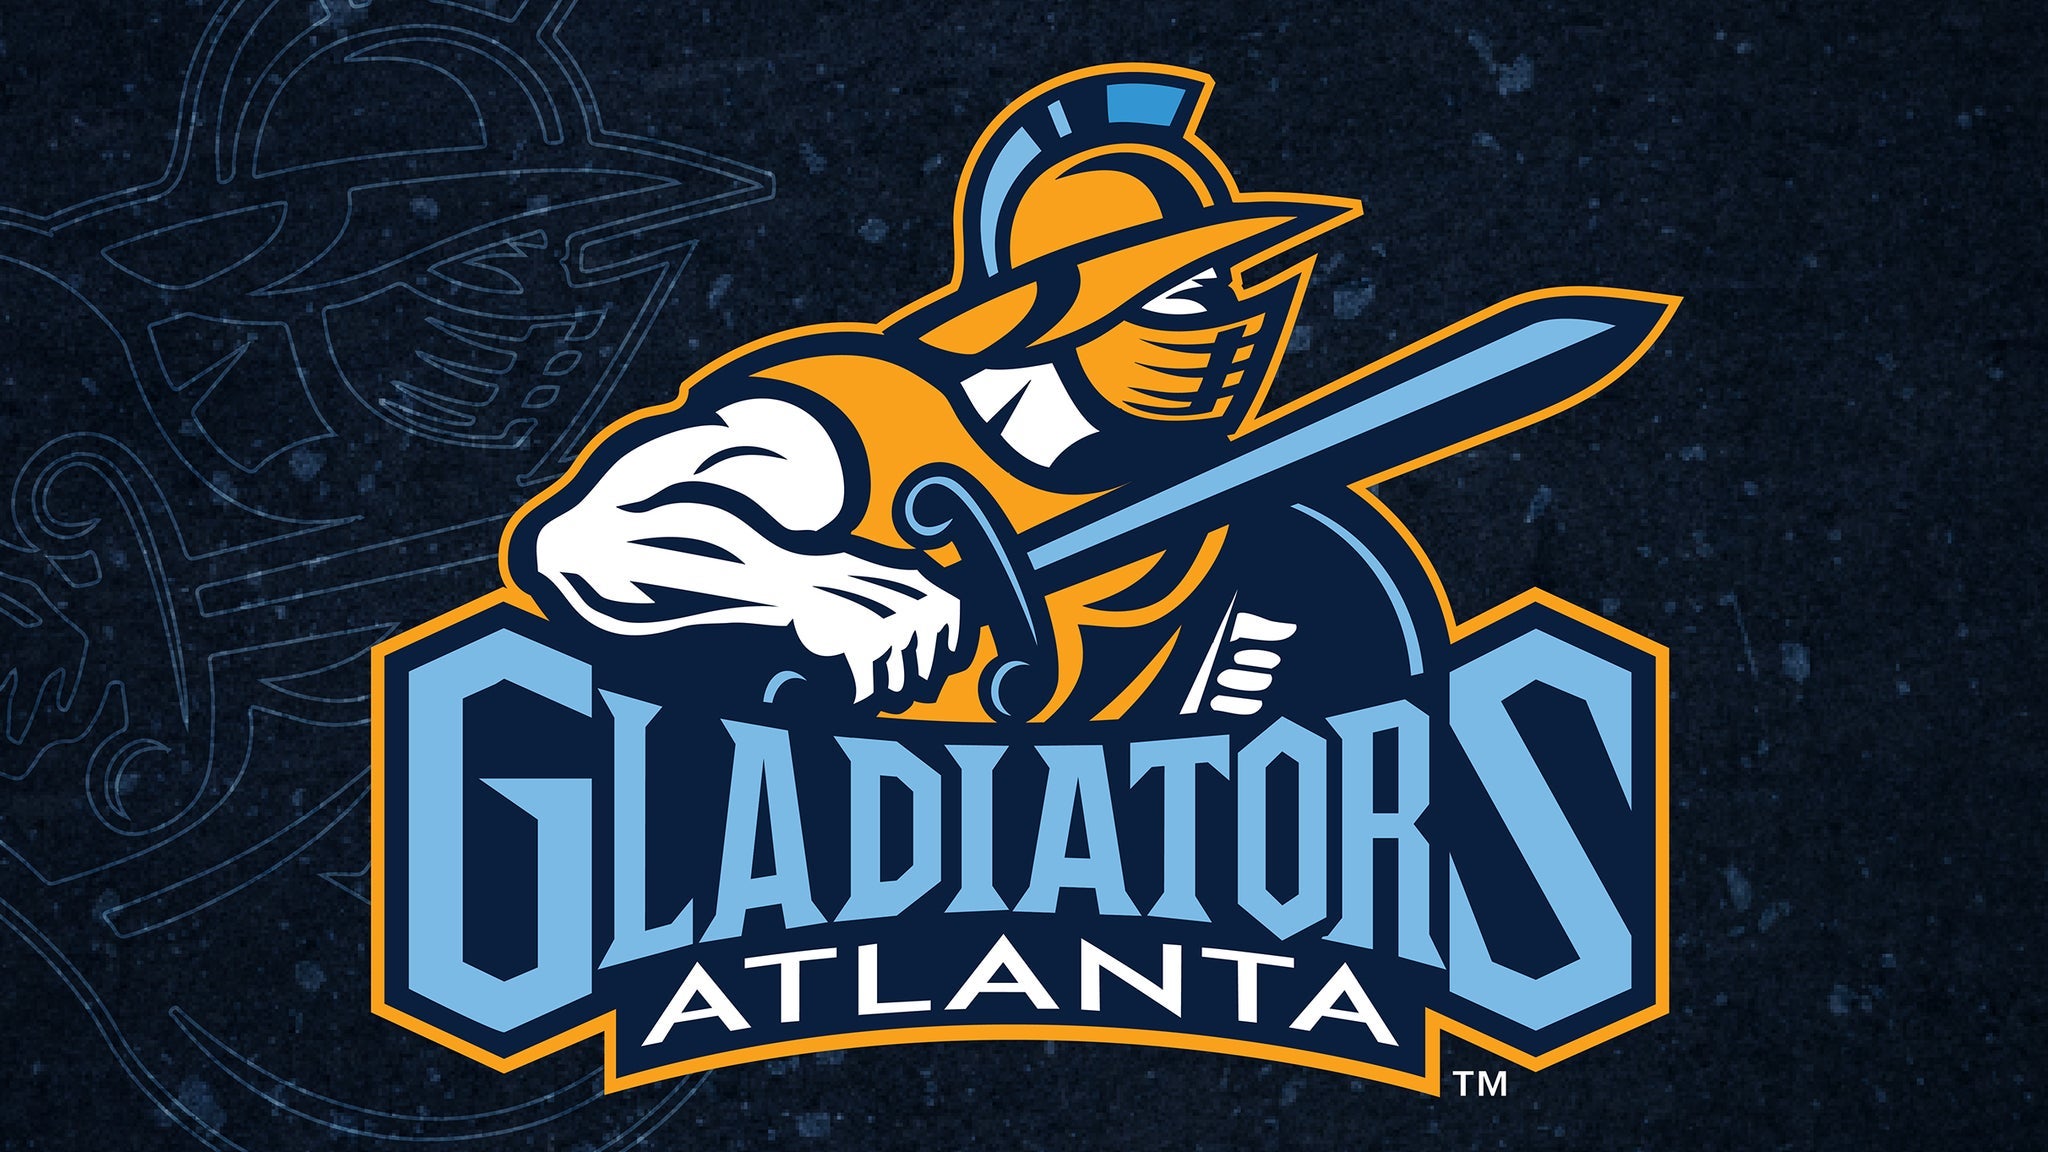 PREVIEW: 1/5 - Atlanta Gladiators @ Savannah Ghost Pirates